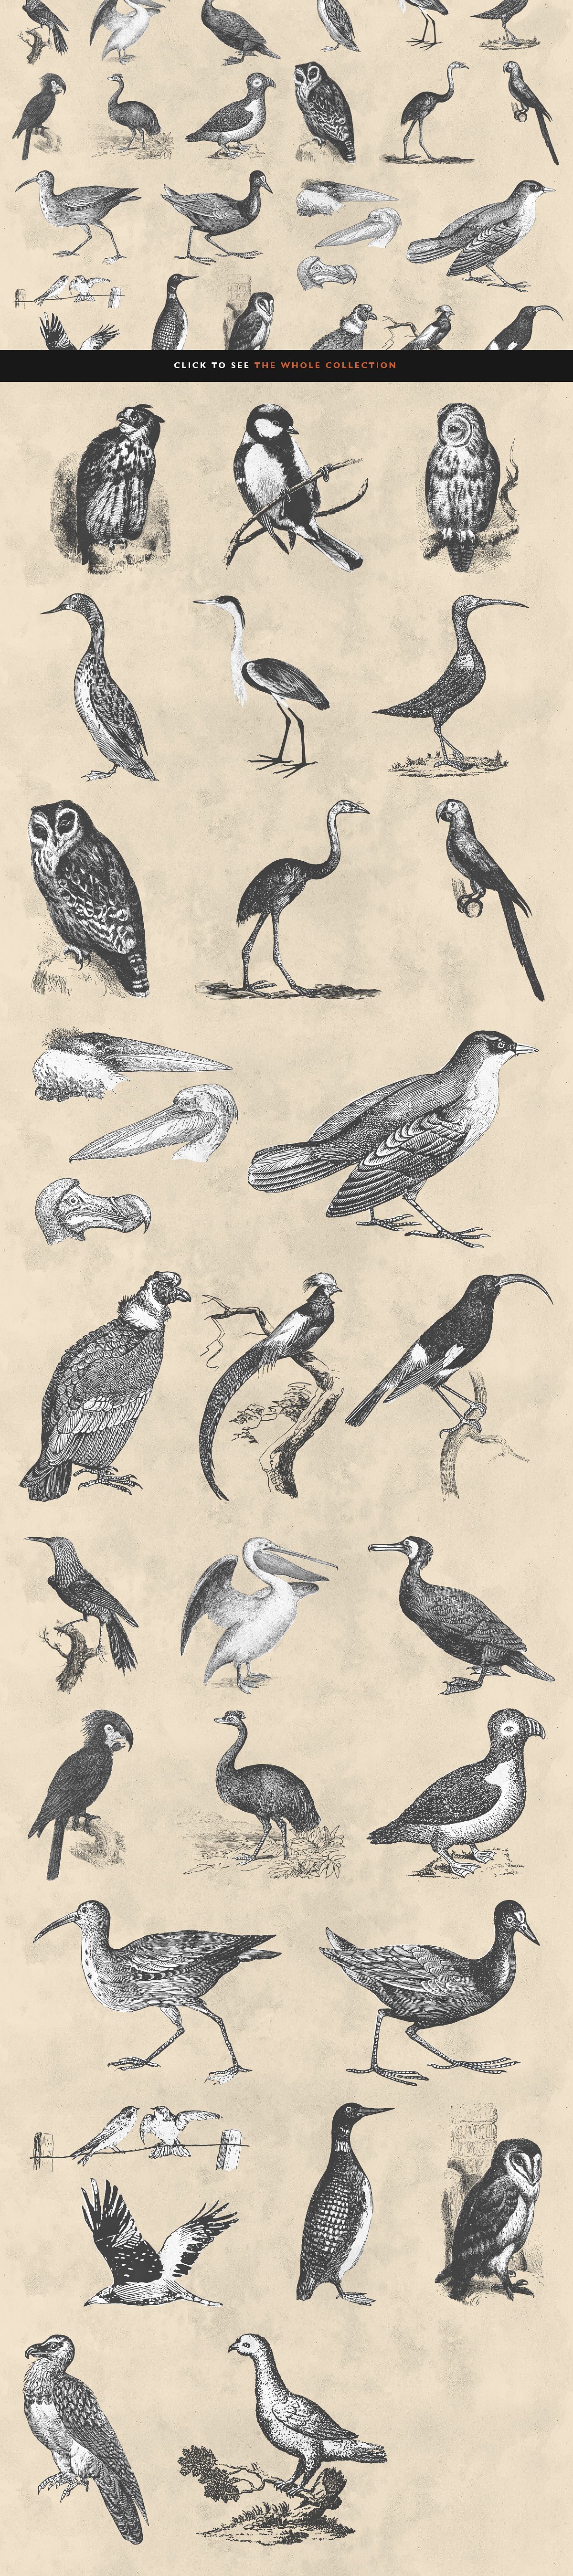 复古手绘鸟类矢量插图30 Bird Illustration